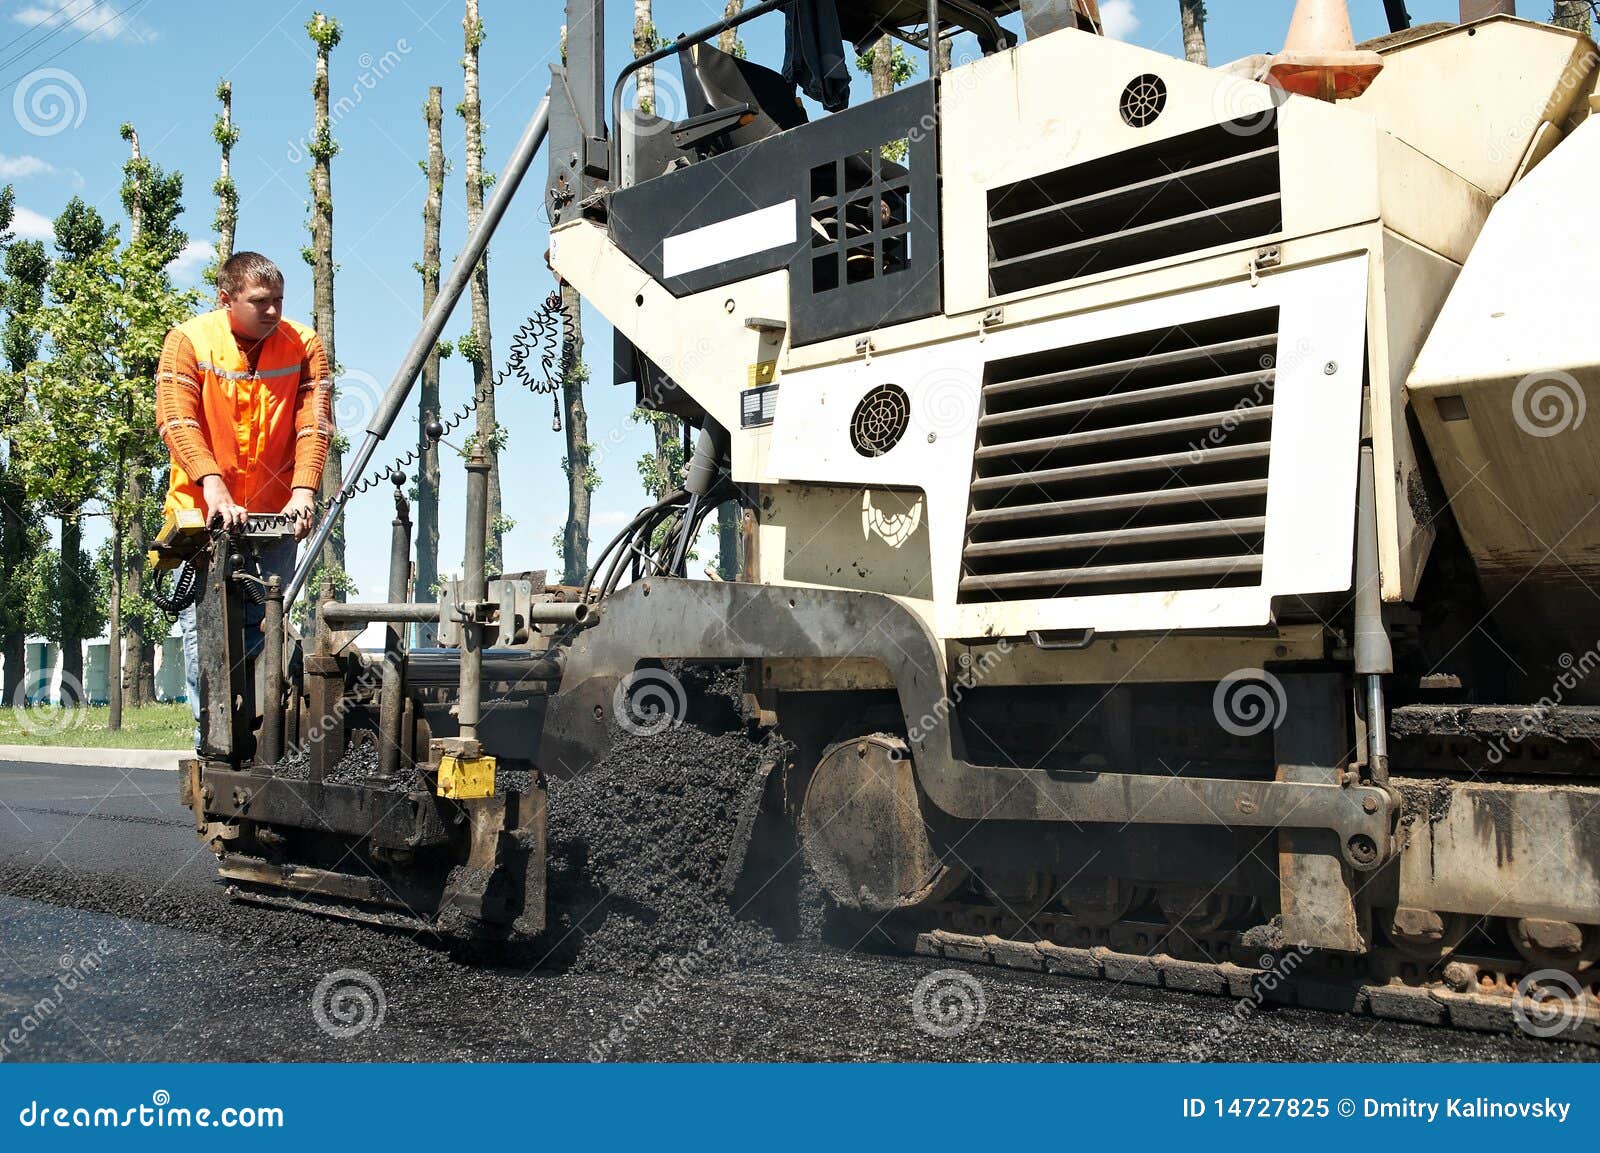 paver worker at asphalting works